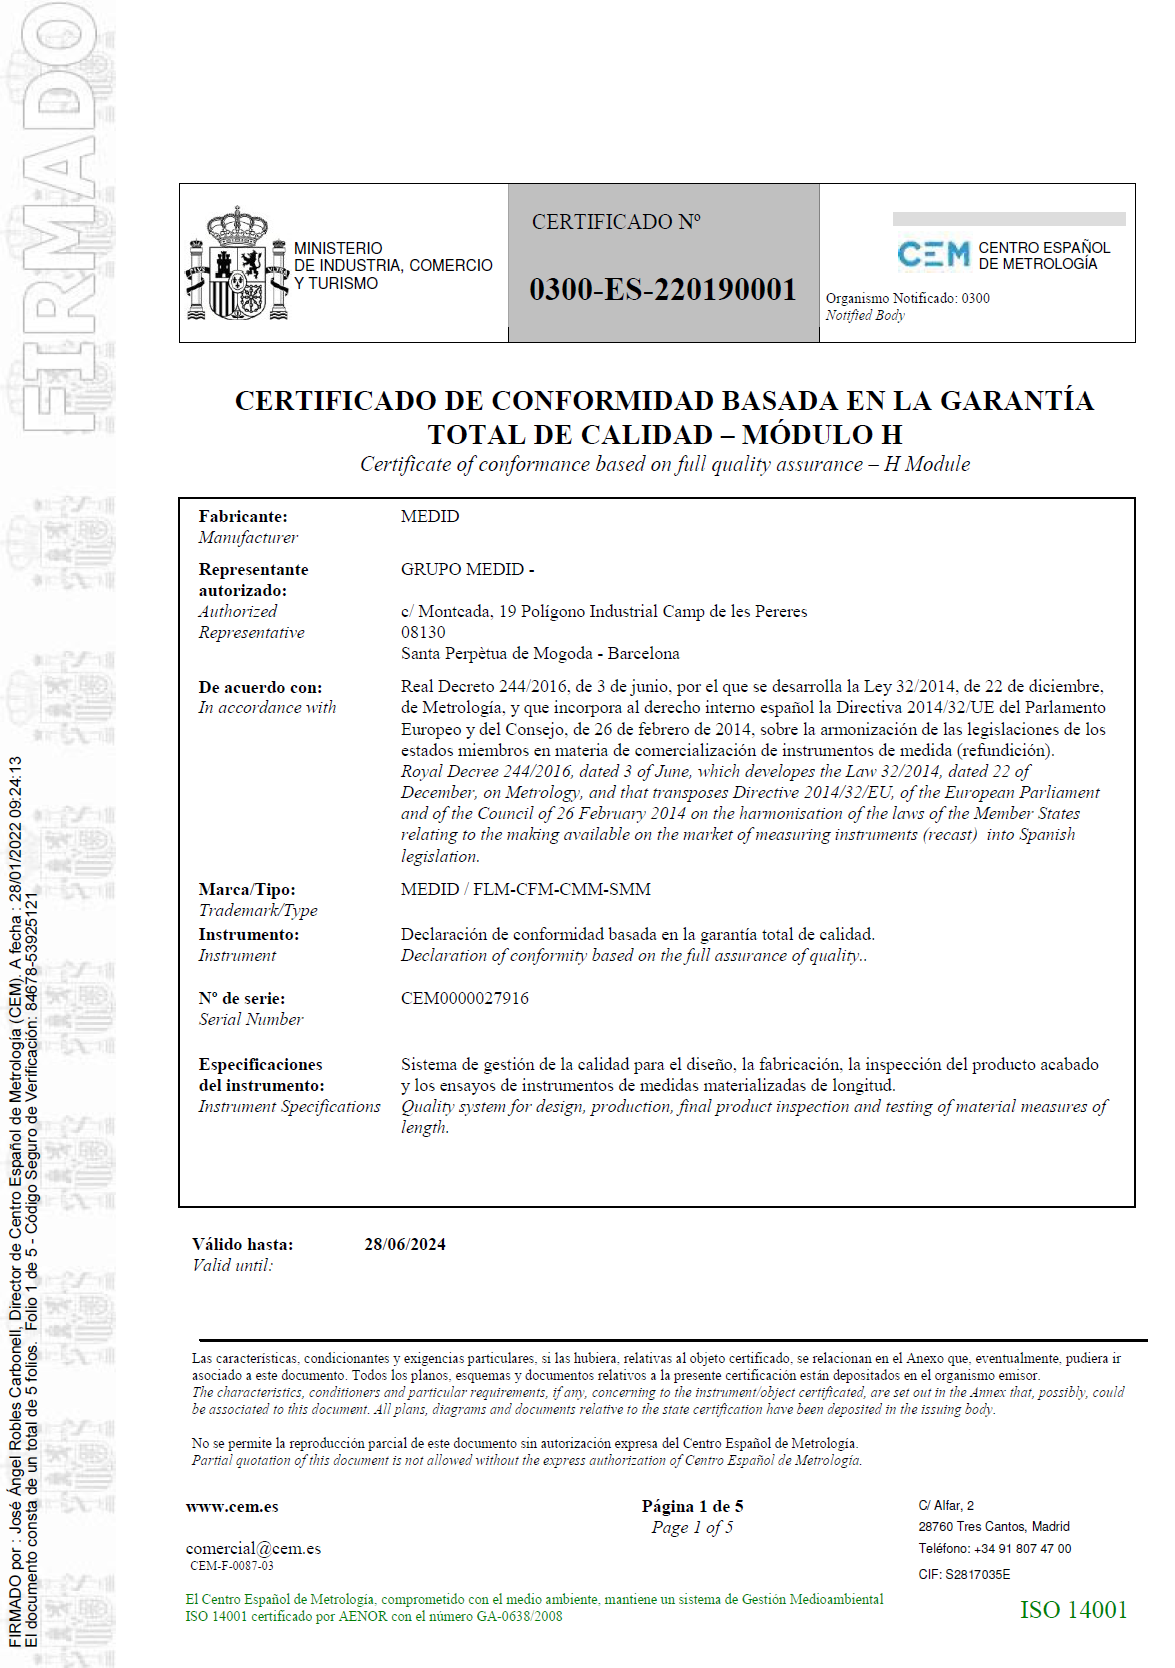 Certificado de conformidad basada en la garantía total de la calidad - Módulo H nº 0300-ES-220190001